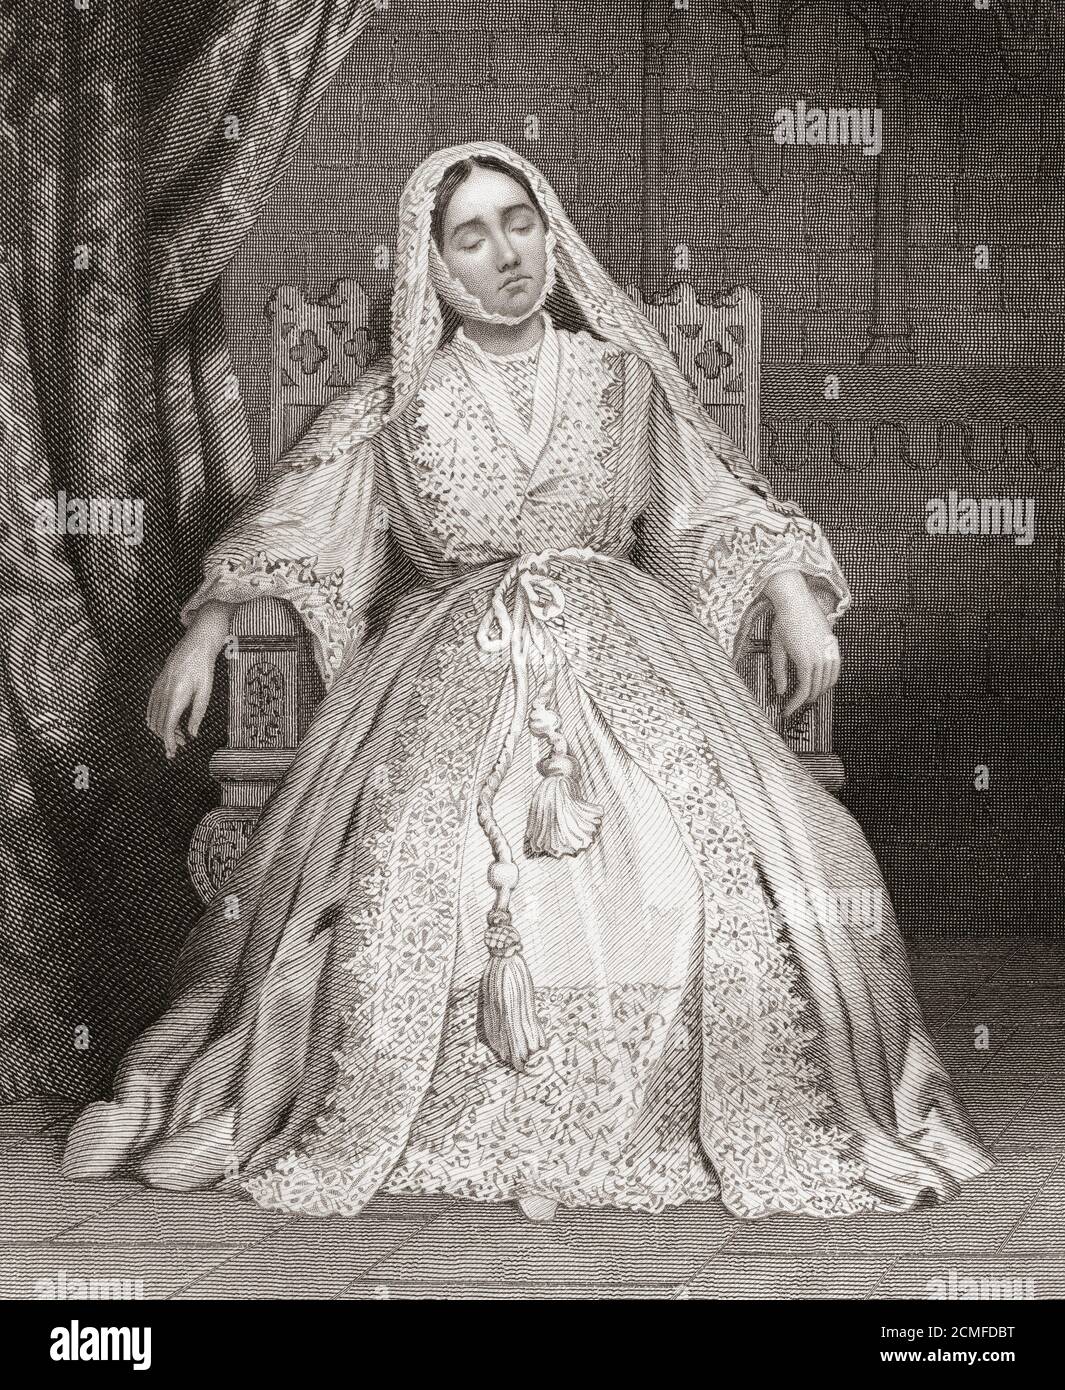 Mlle Glynn dans le rôle de la reine Katherine de la pièce de Shakespeare Henry VIII Isabella Glyn, 1823 – 1889. Actrice shakespearienne de l'époque victorienne. Banque D'Images